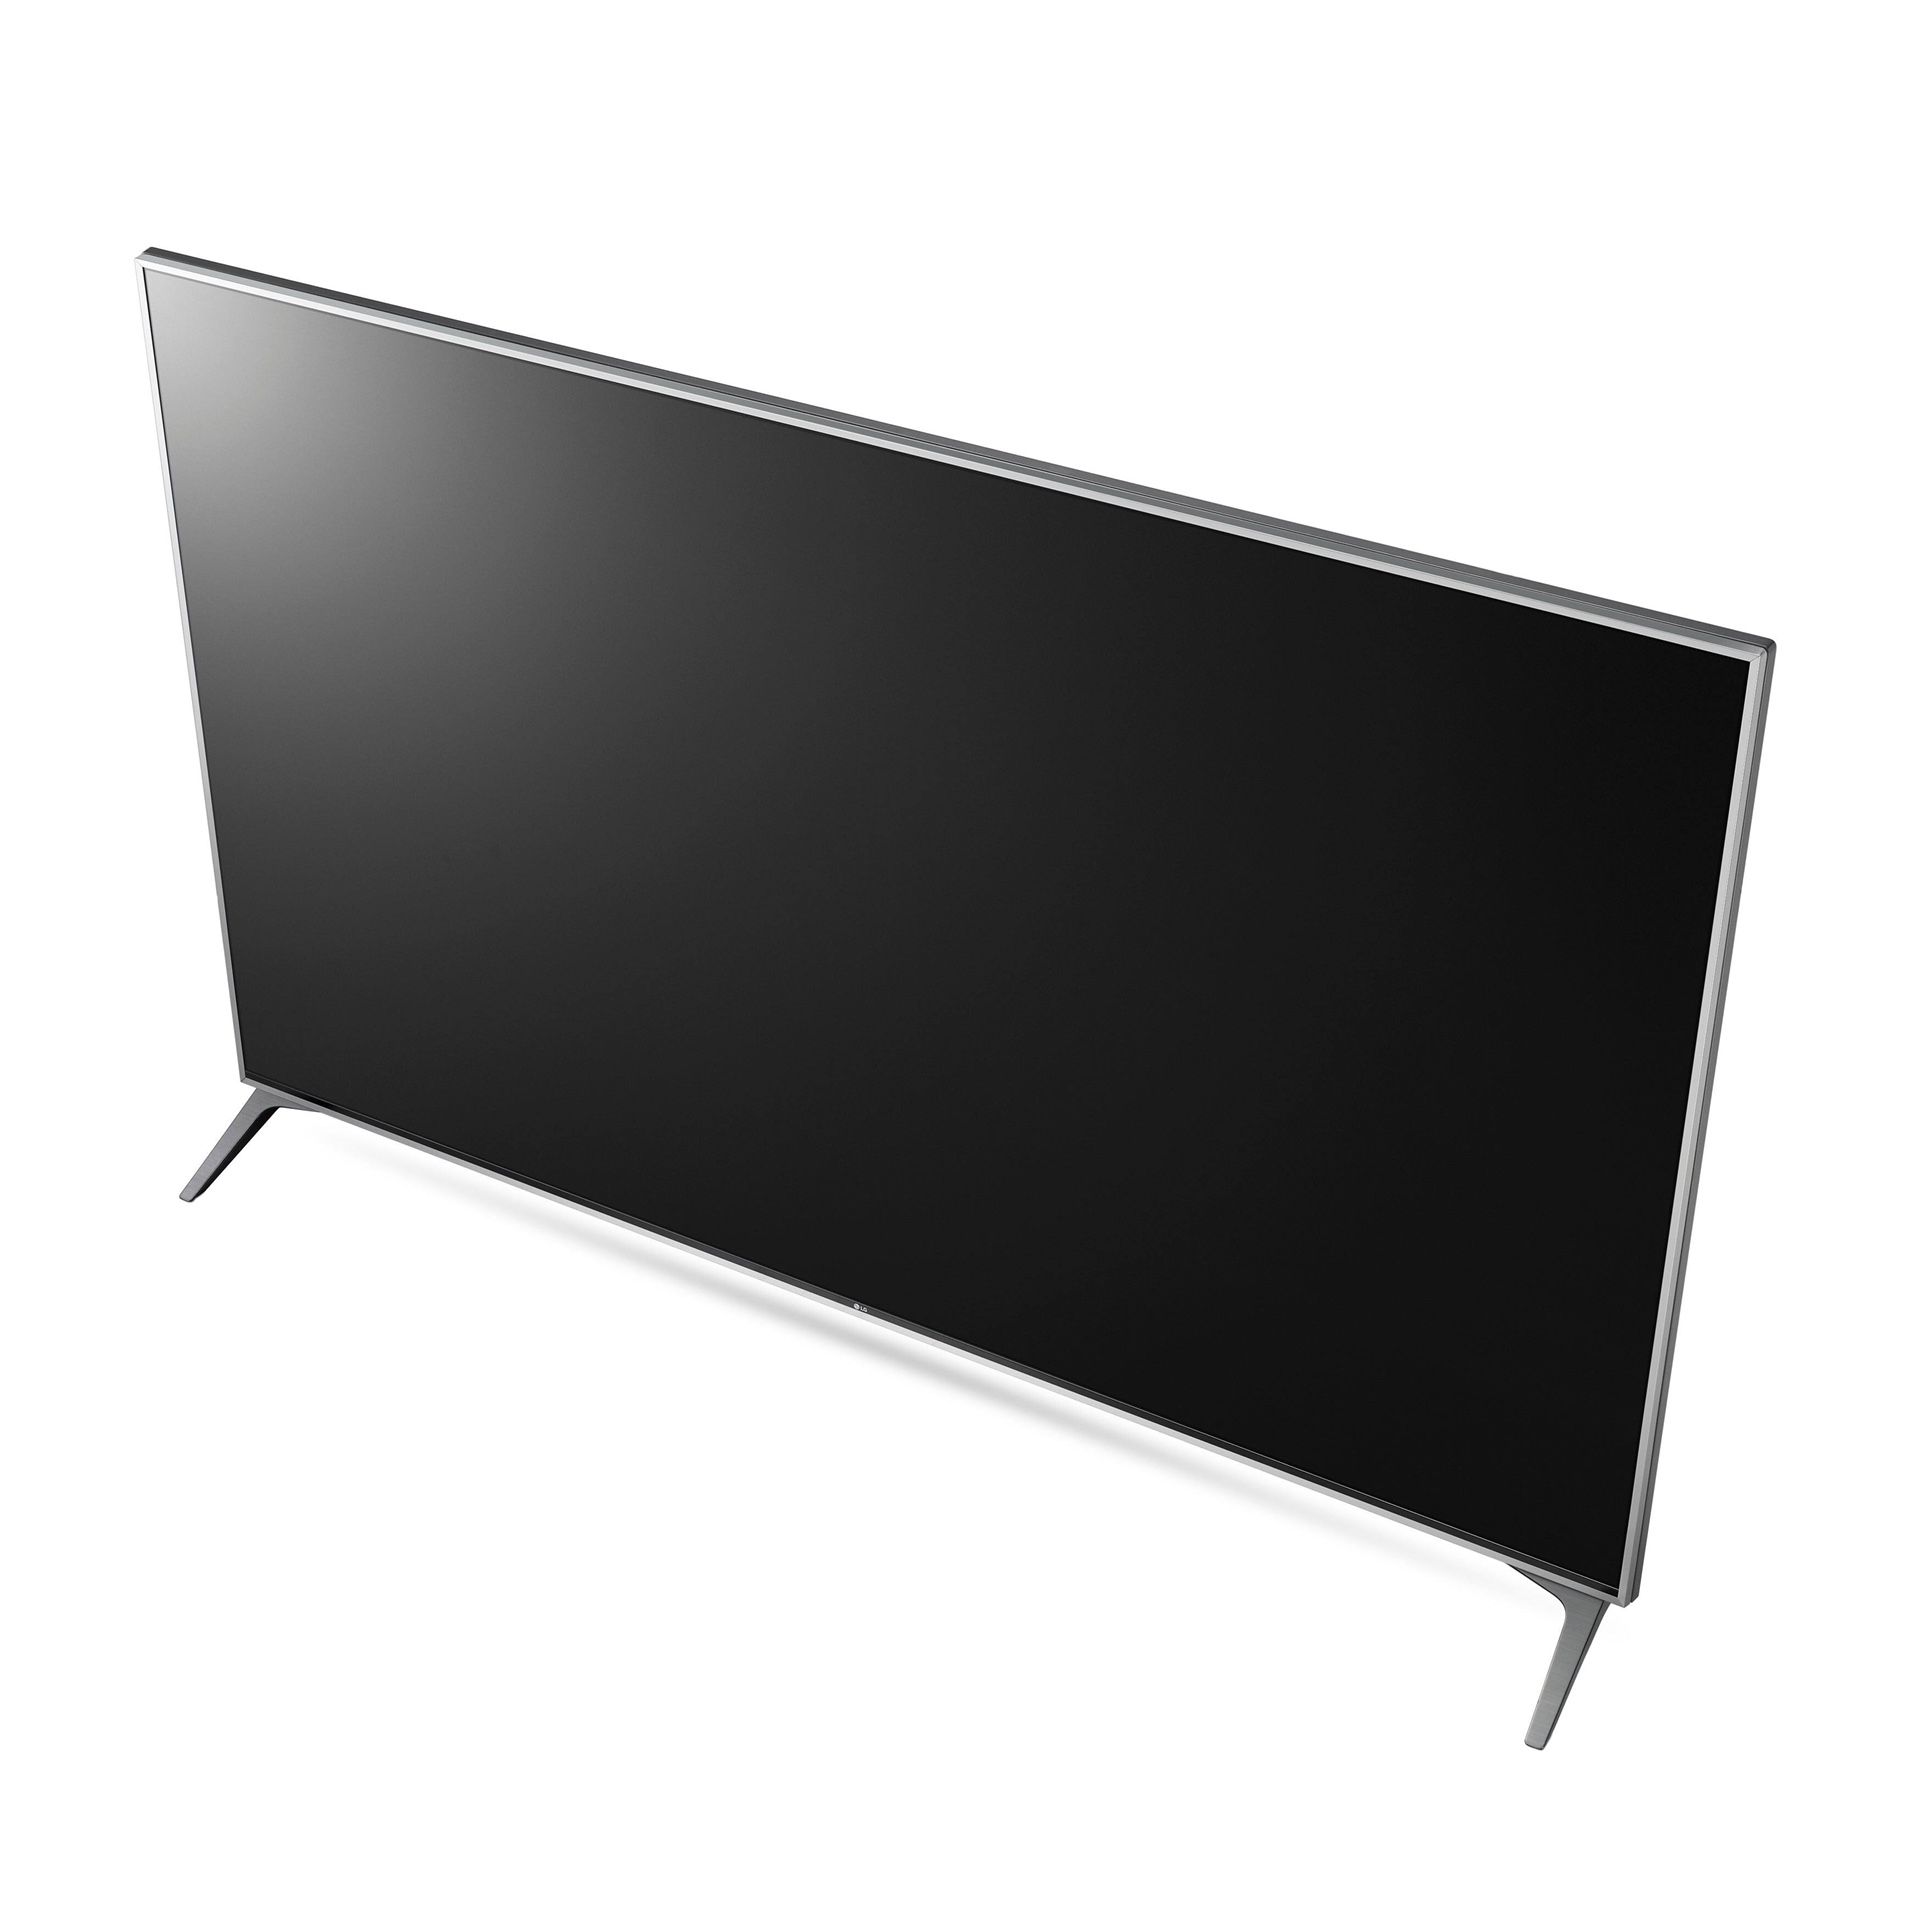 LG 60 Inch Class 4K Smart LED TV